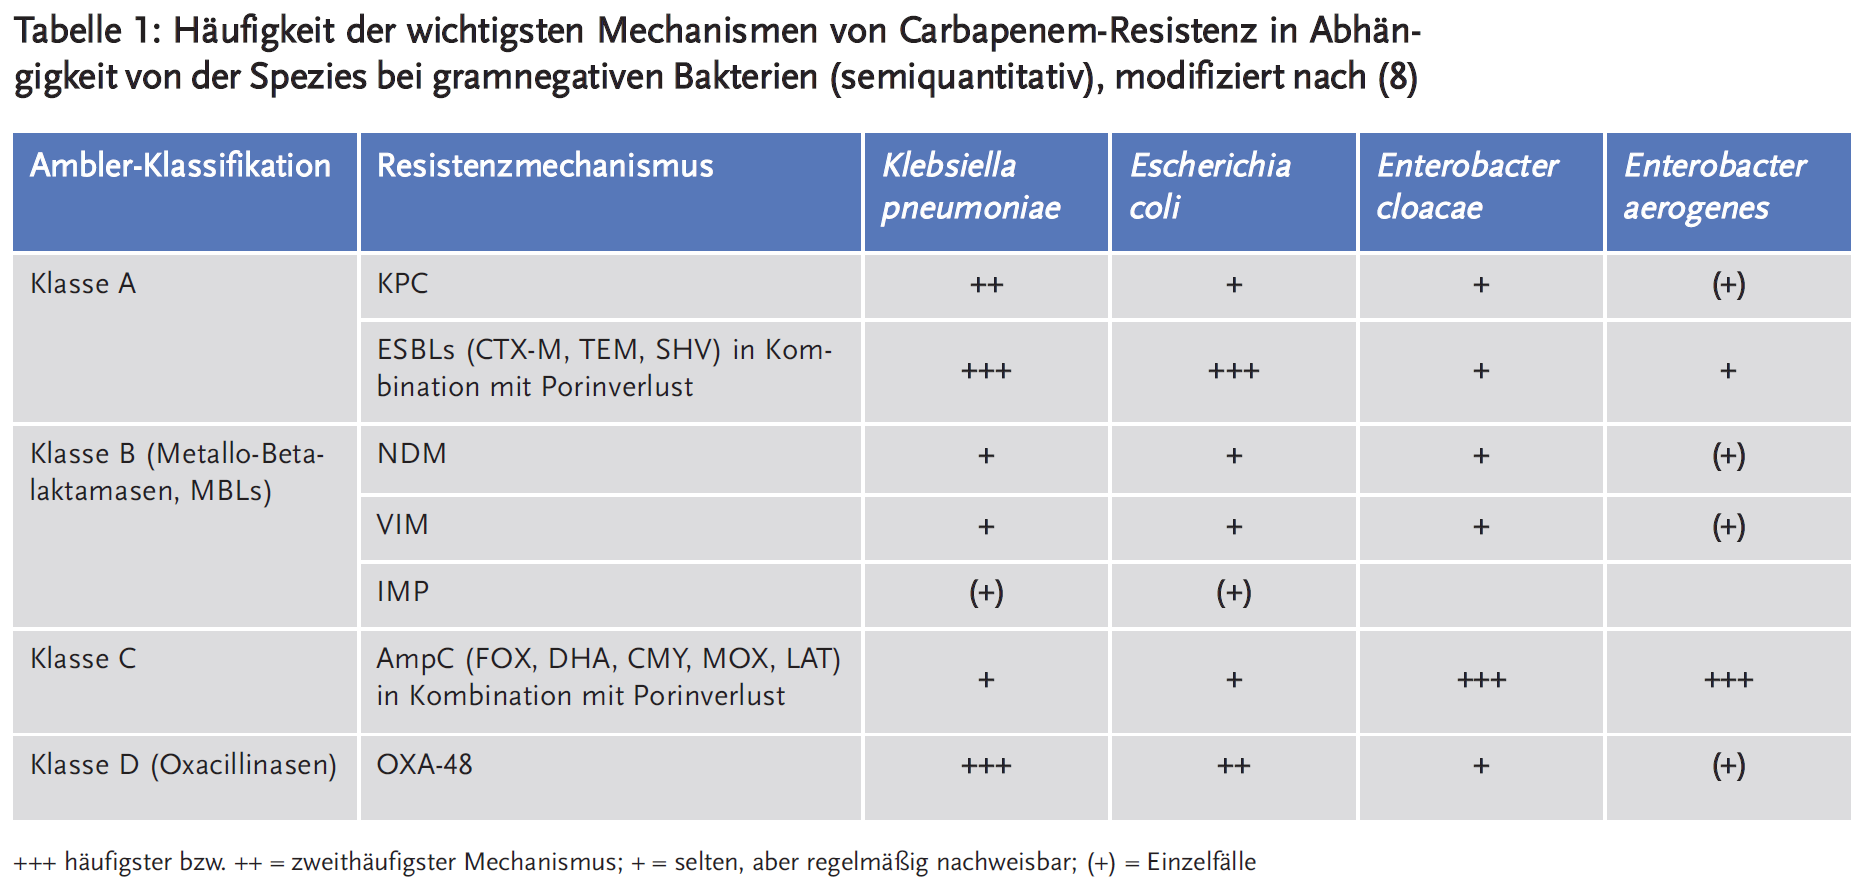 Tabelle 1: Häufigkeit der wichtigsten Mechanismen von Carbapenem-Resistenz in Abhängigkeit von der Spezies bei gramnegativen Bakterien (semiquantitativ), modifiziert nach (8)